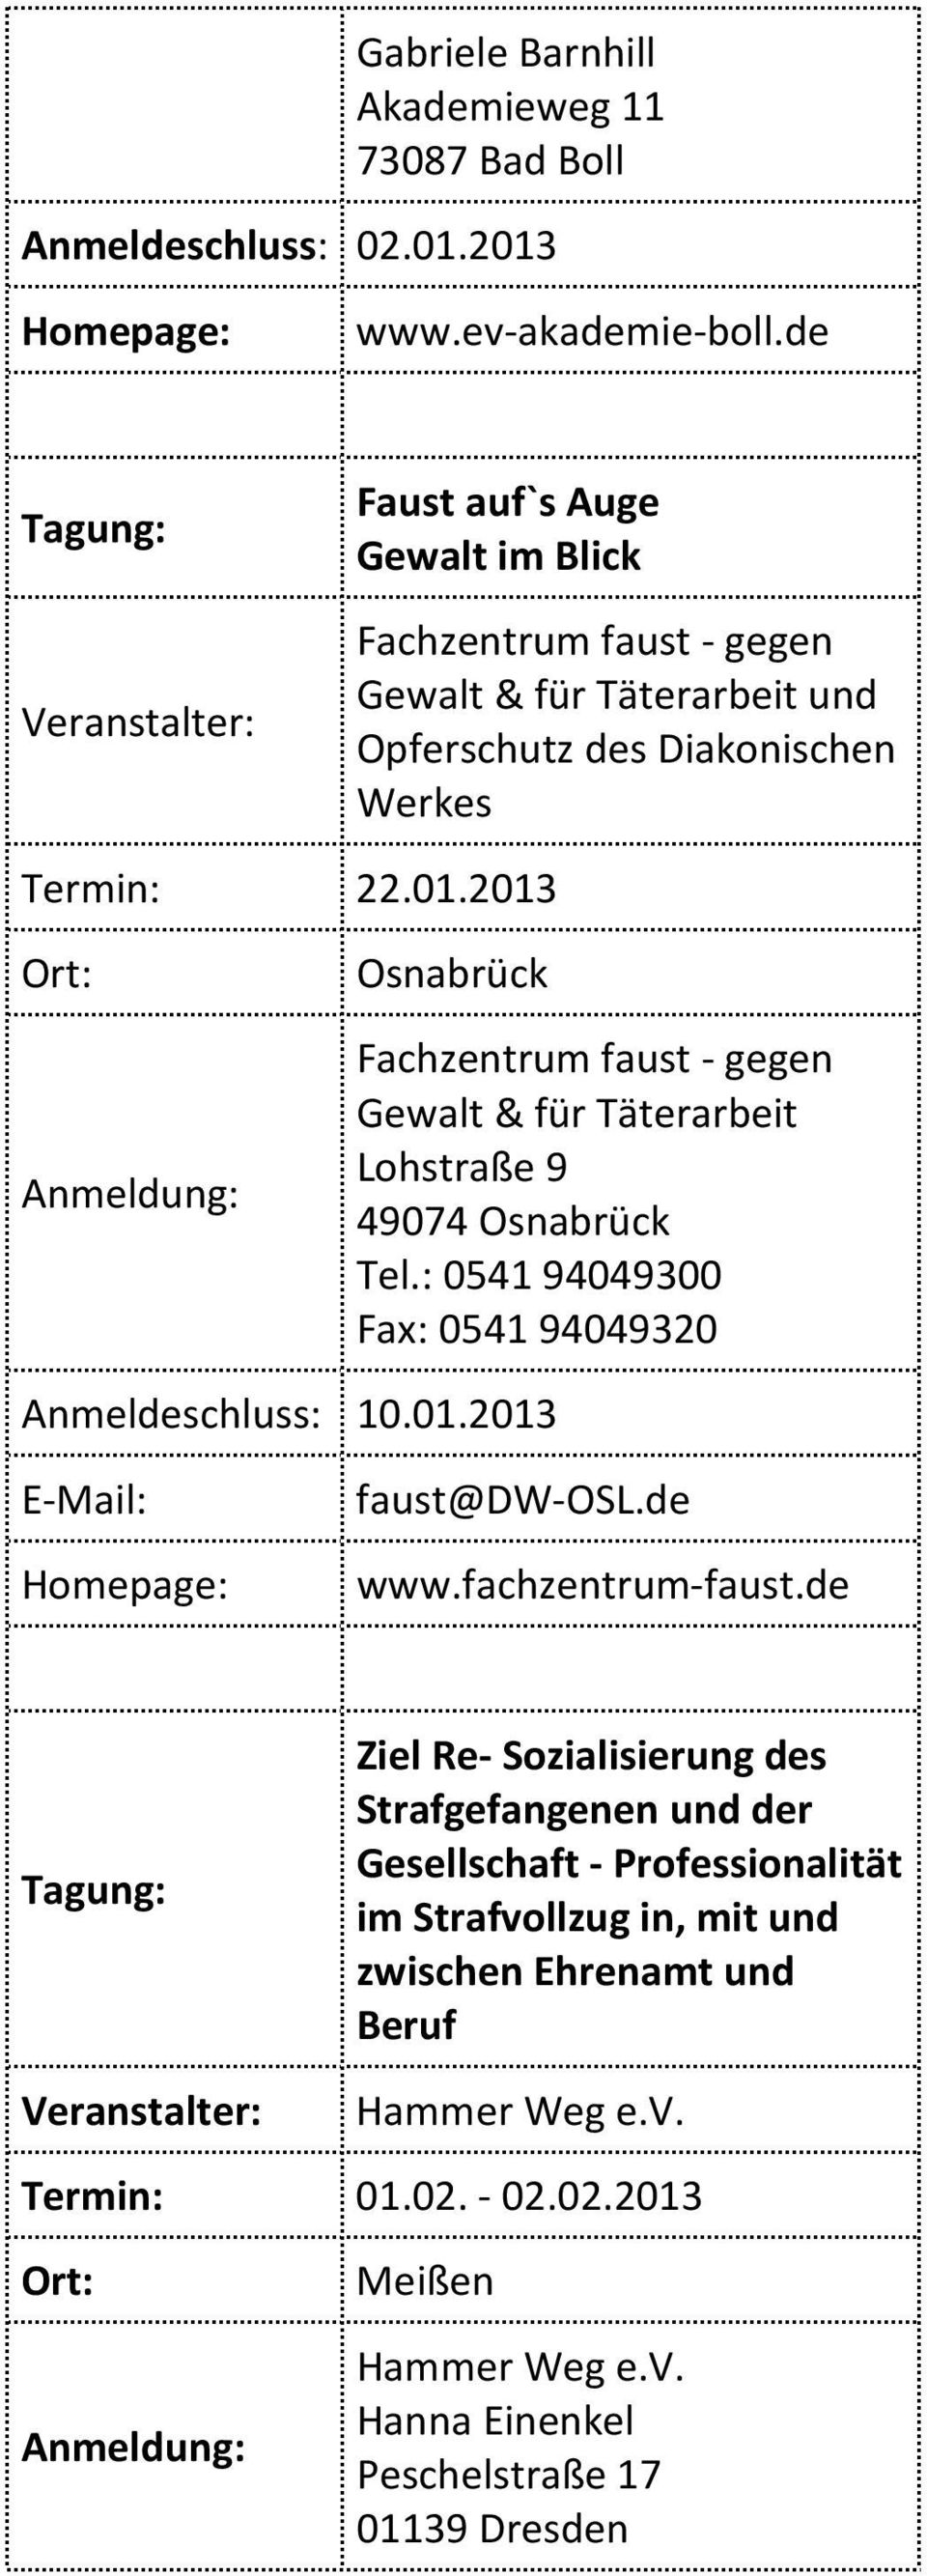 2013 Osnabrück Fachzentrum faust - gegen Gewalt & für Täterarbeit Lohstraße 9 49074 Osnabrück Tel.: 0541 94049300 Fax: 0541 94049320 Anmeldeschluss: 10.01.2013 faust@dw-osl.